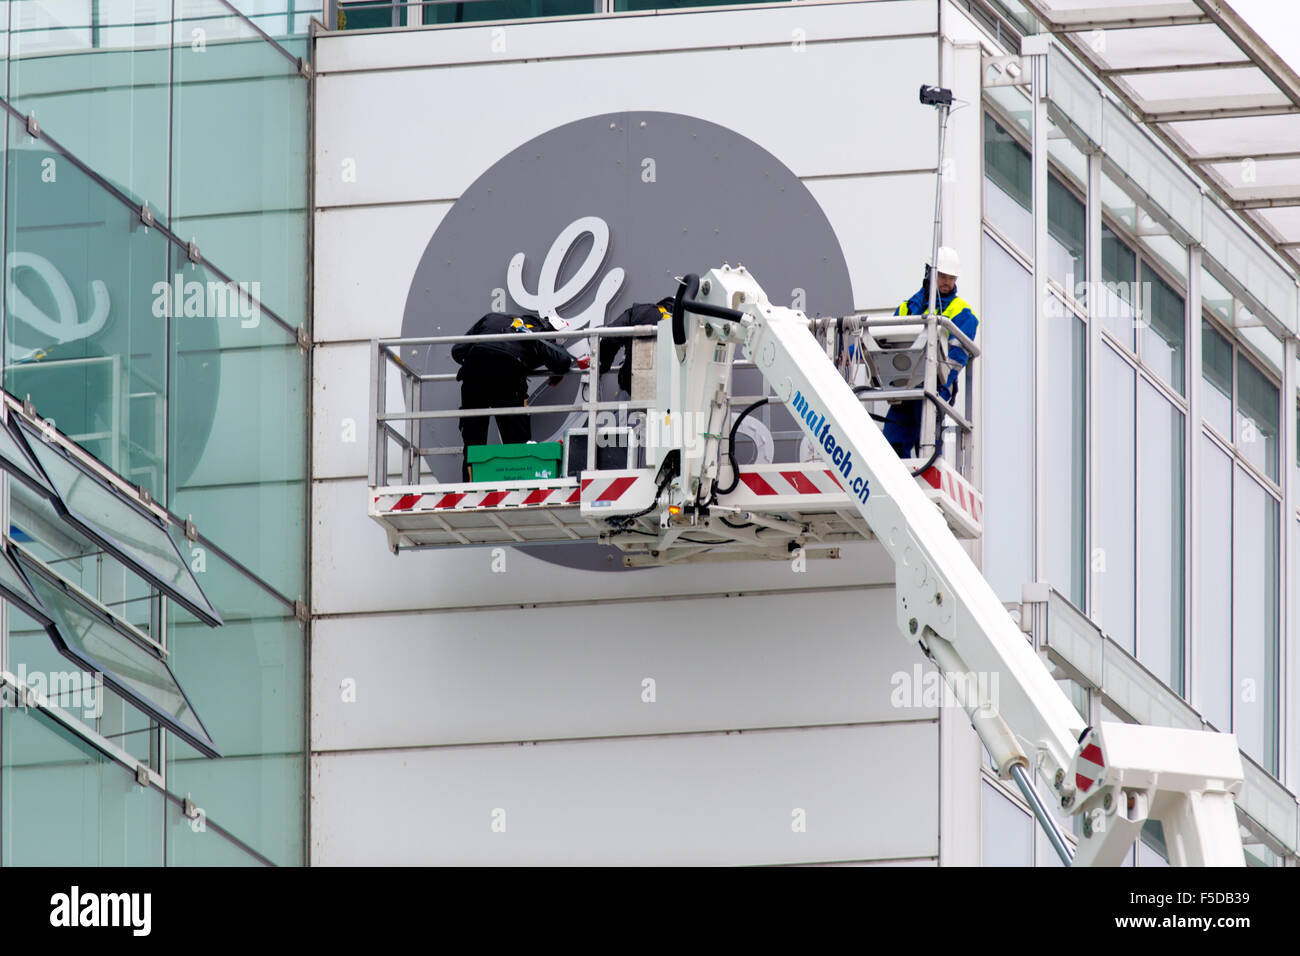 Baden/Schweiz. 2. November 2015. Installation des neuen General Electric Logos am ehemaligen Sitz der Alstom Wärmeleistung. Carsten Reisinger/Alamy Live-Nachrichten. Stockfoto